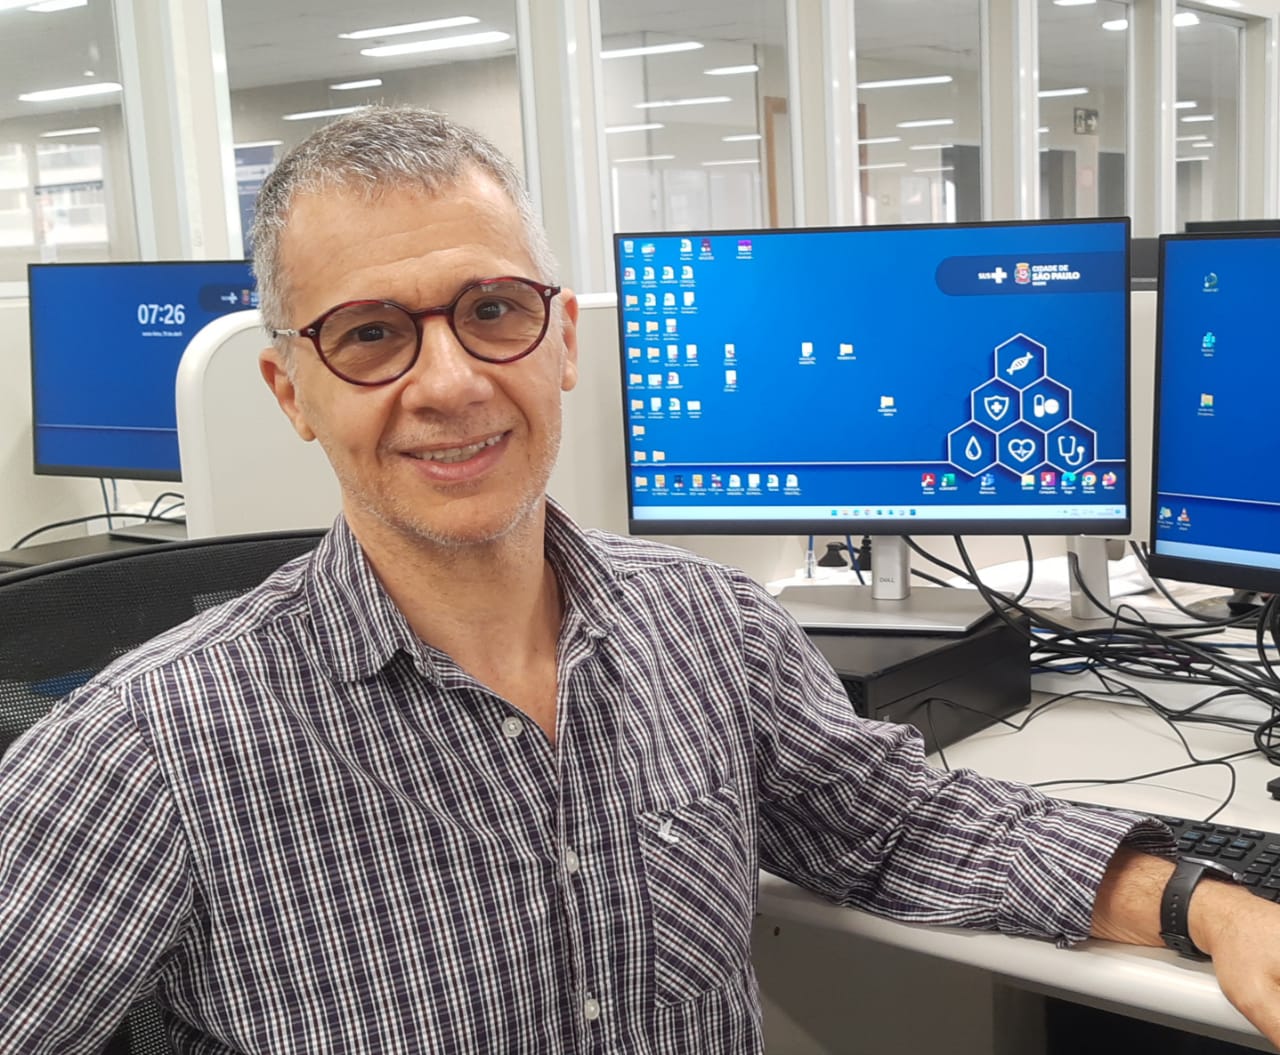 A foto mostra Carlos, um homem branco de cabelos grisalhos e óculos, em frente a um computador, no seu locald e trabalho. 